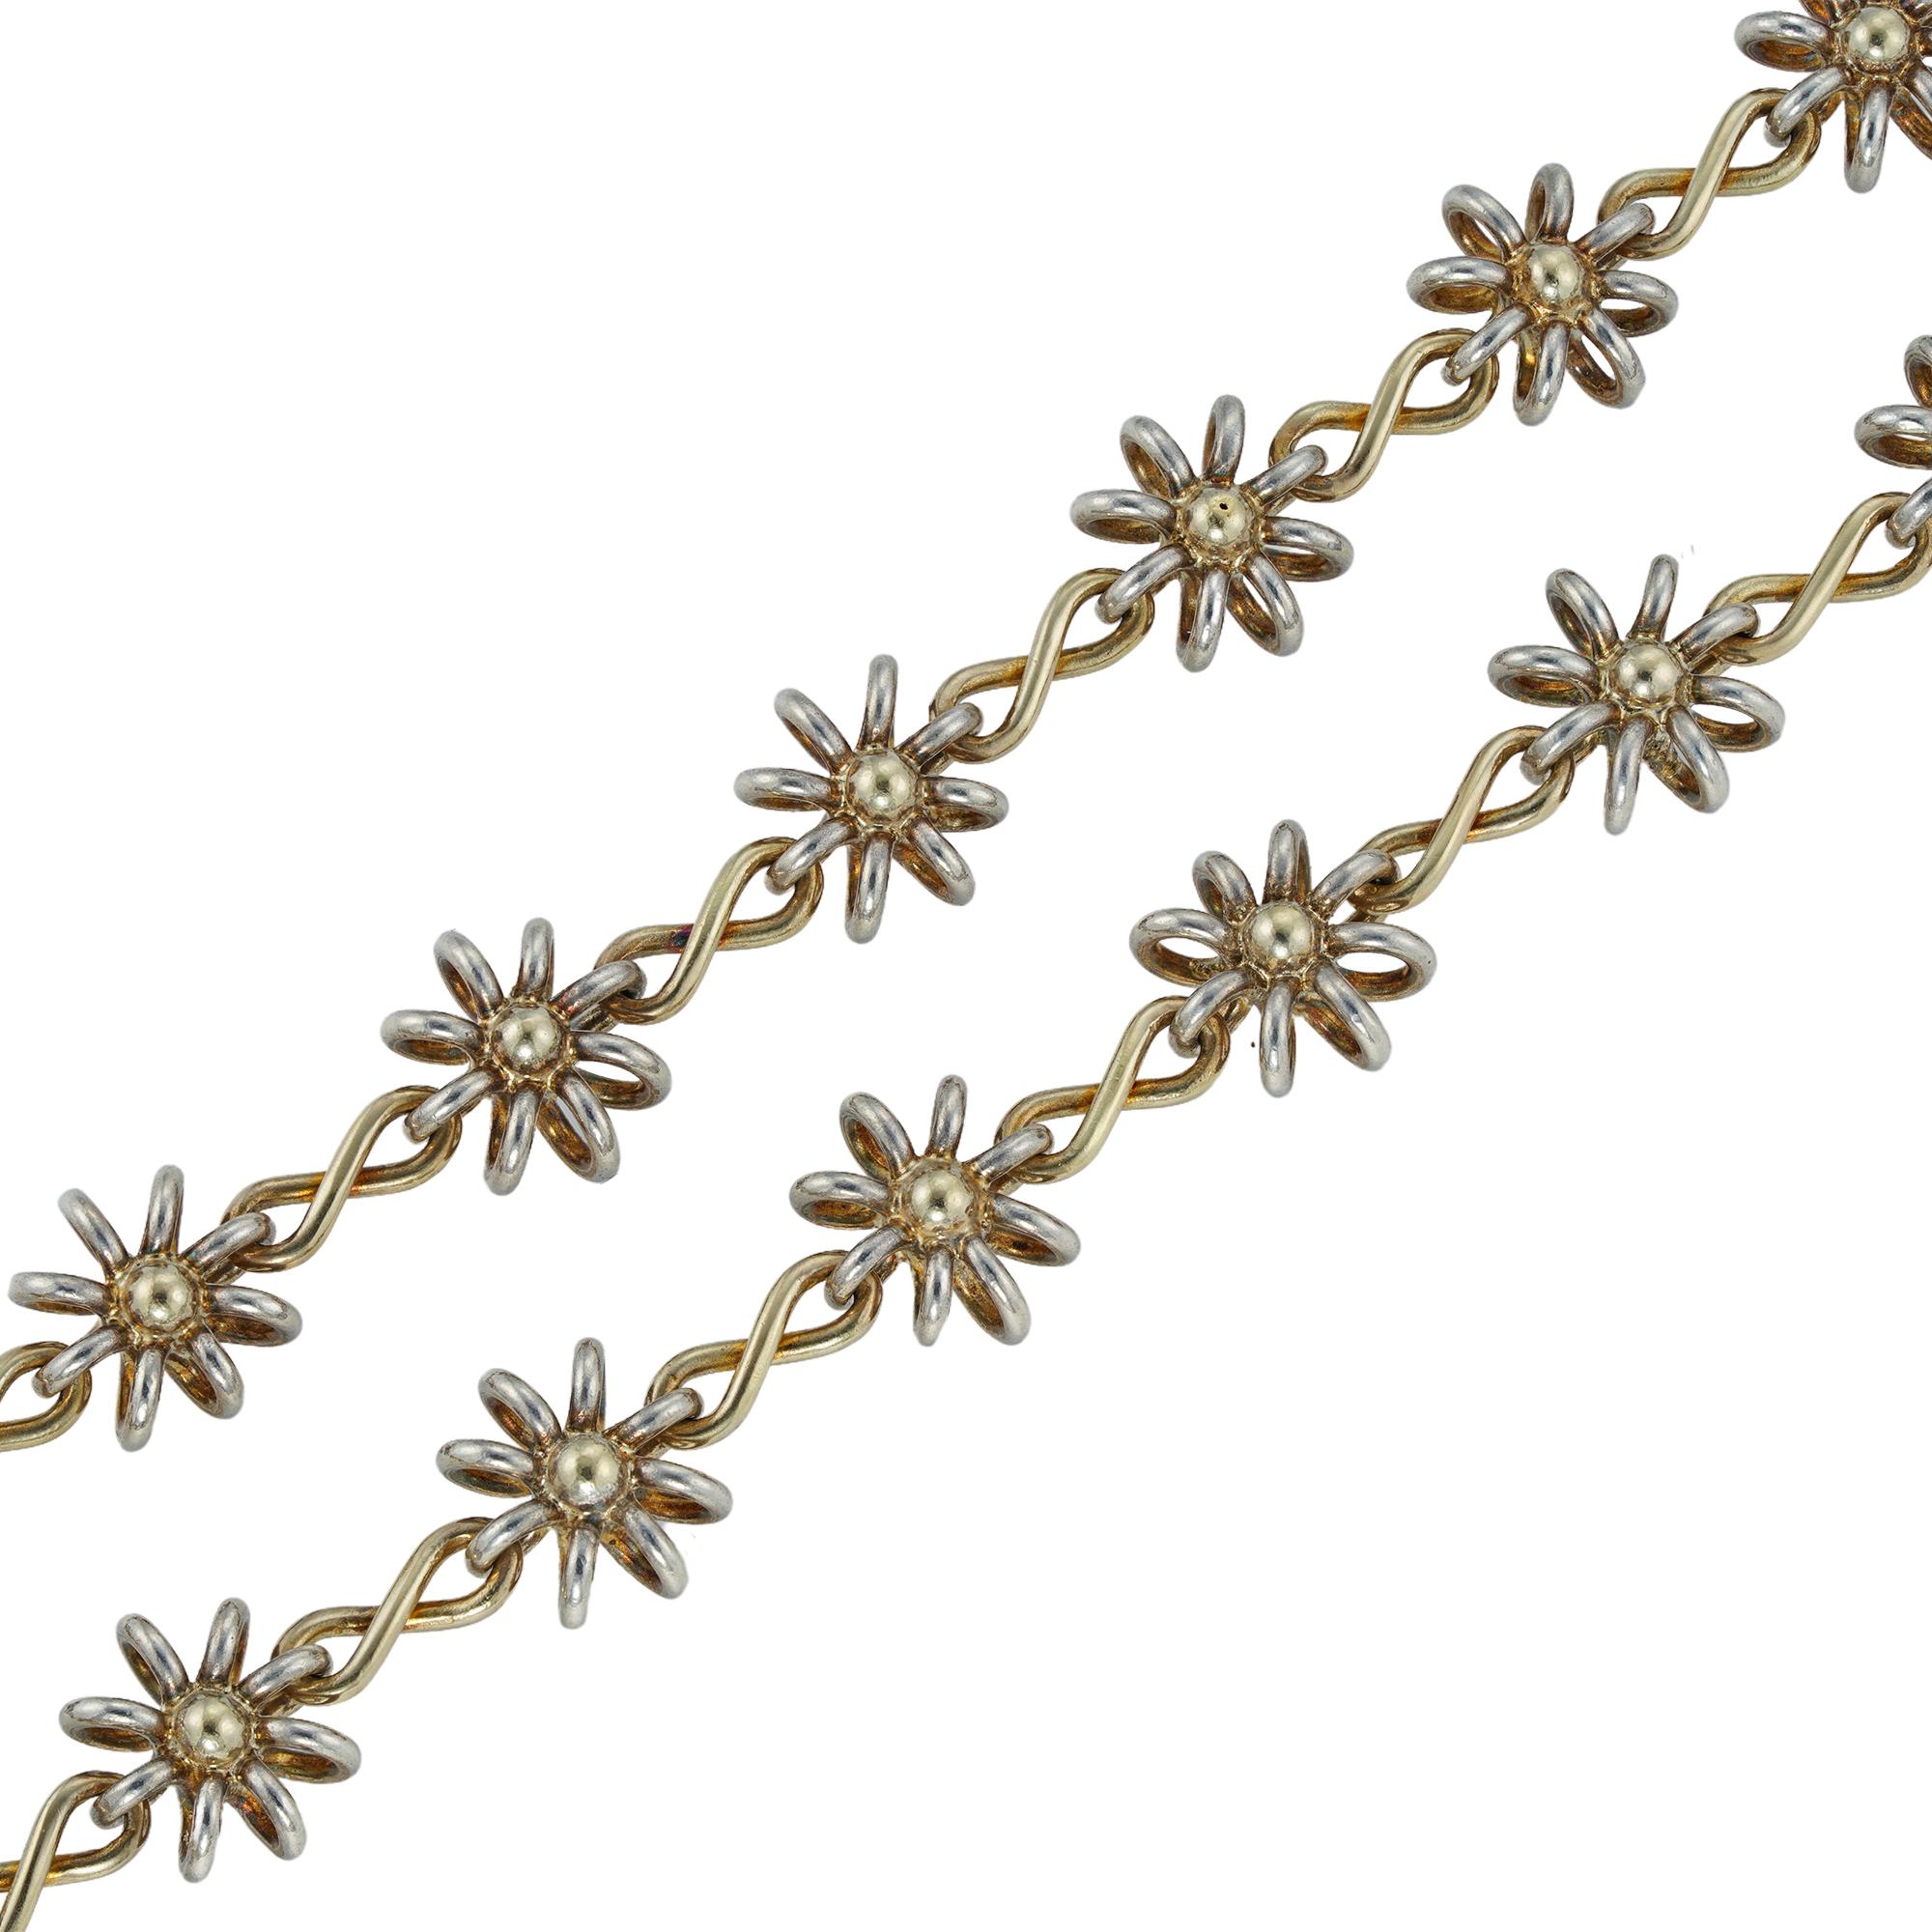 Eine Darcey Bussell-Halskette, handgefertigt von Lucie Heskett-Brem, der Goldweberin aus Luzern, bestehend aus siebenundzwanzig großen Silberketten.  einheitliche florale Motive mit Gliedern aus Gelbgold in Achterform, mit den üblichen